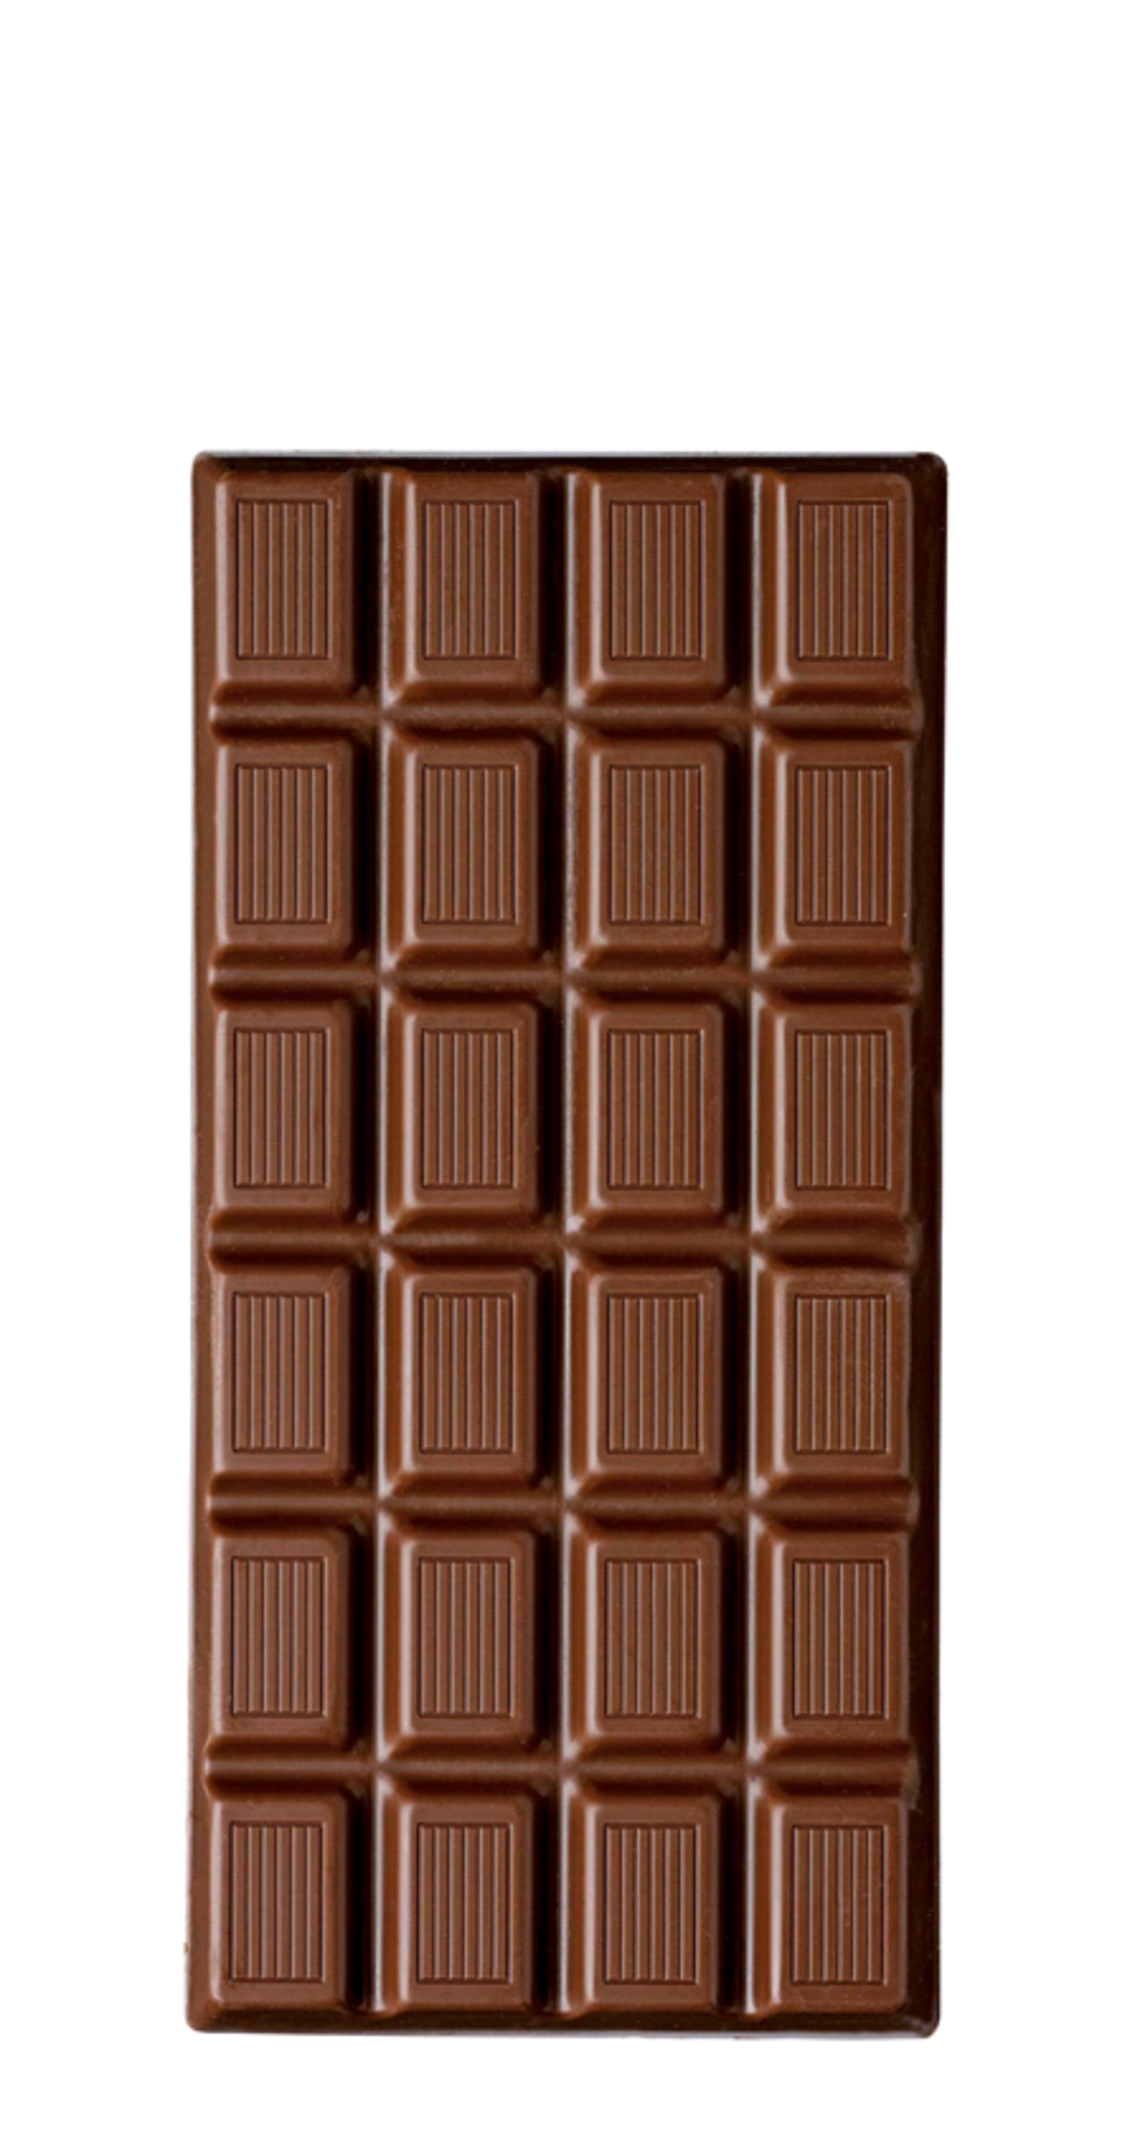 Chocolat Stella Gianduja - 100g